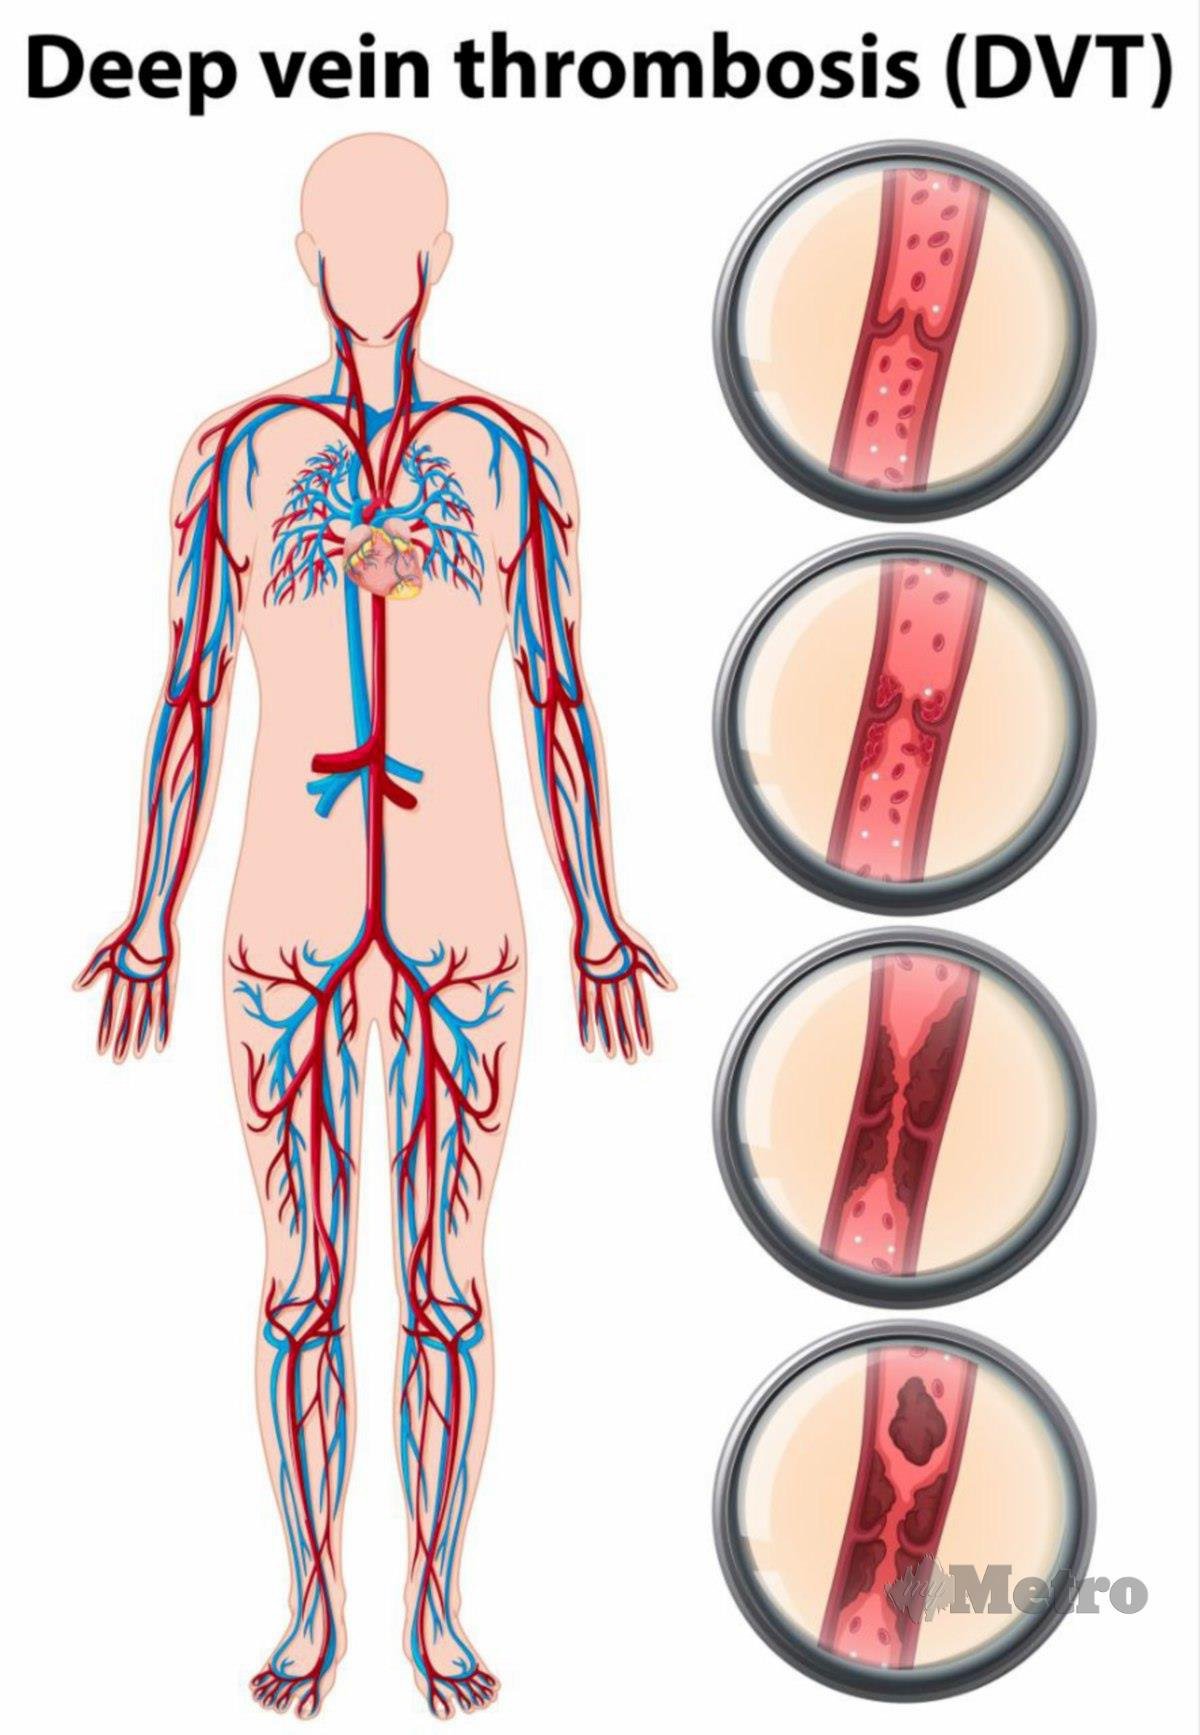 DVT berlaku apabila terdapat pembekuan darah terbentuk di dalam sistem vena dalam, biasanya di bahagian kaki.